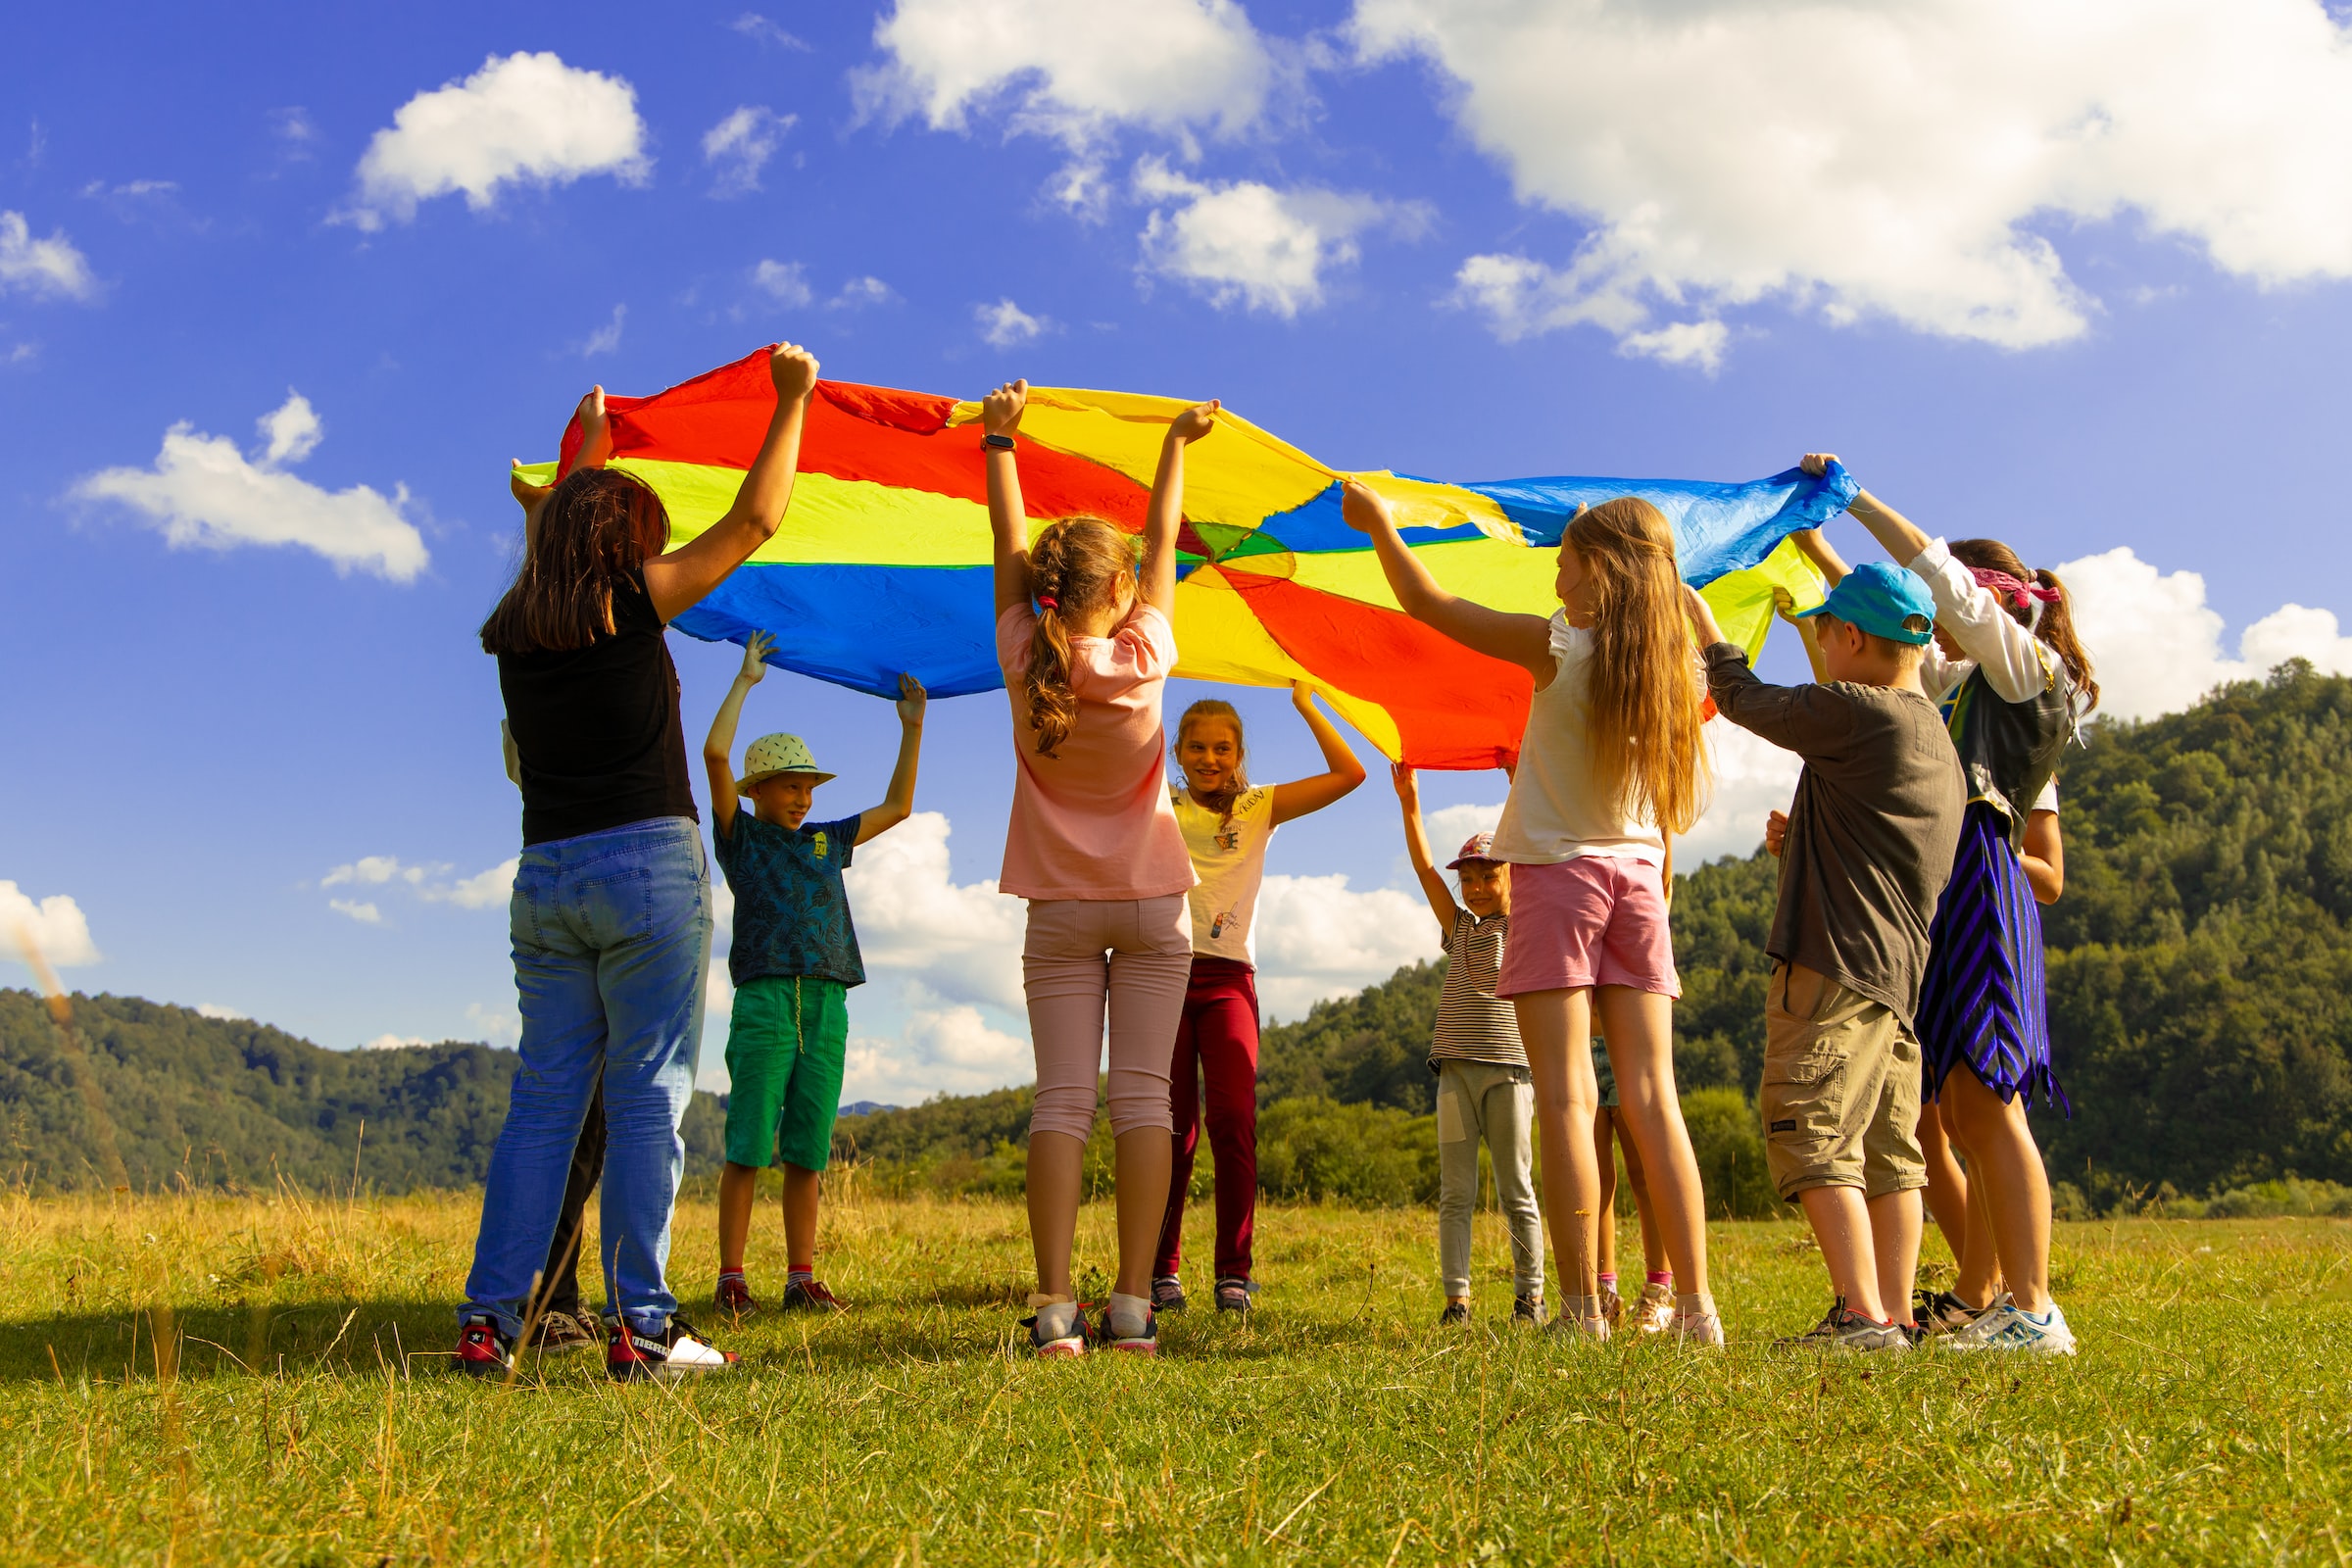 Eine Gruppe Kinder hält ein buntes 'Schwungtuch' in die Luft. Sie stehen auf einer Wiese. Der Himmel ist blau-weiß bewölkt